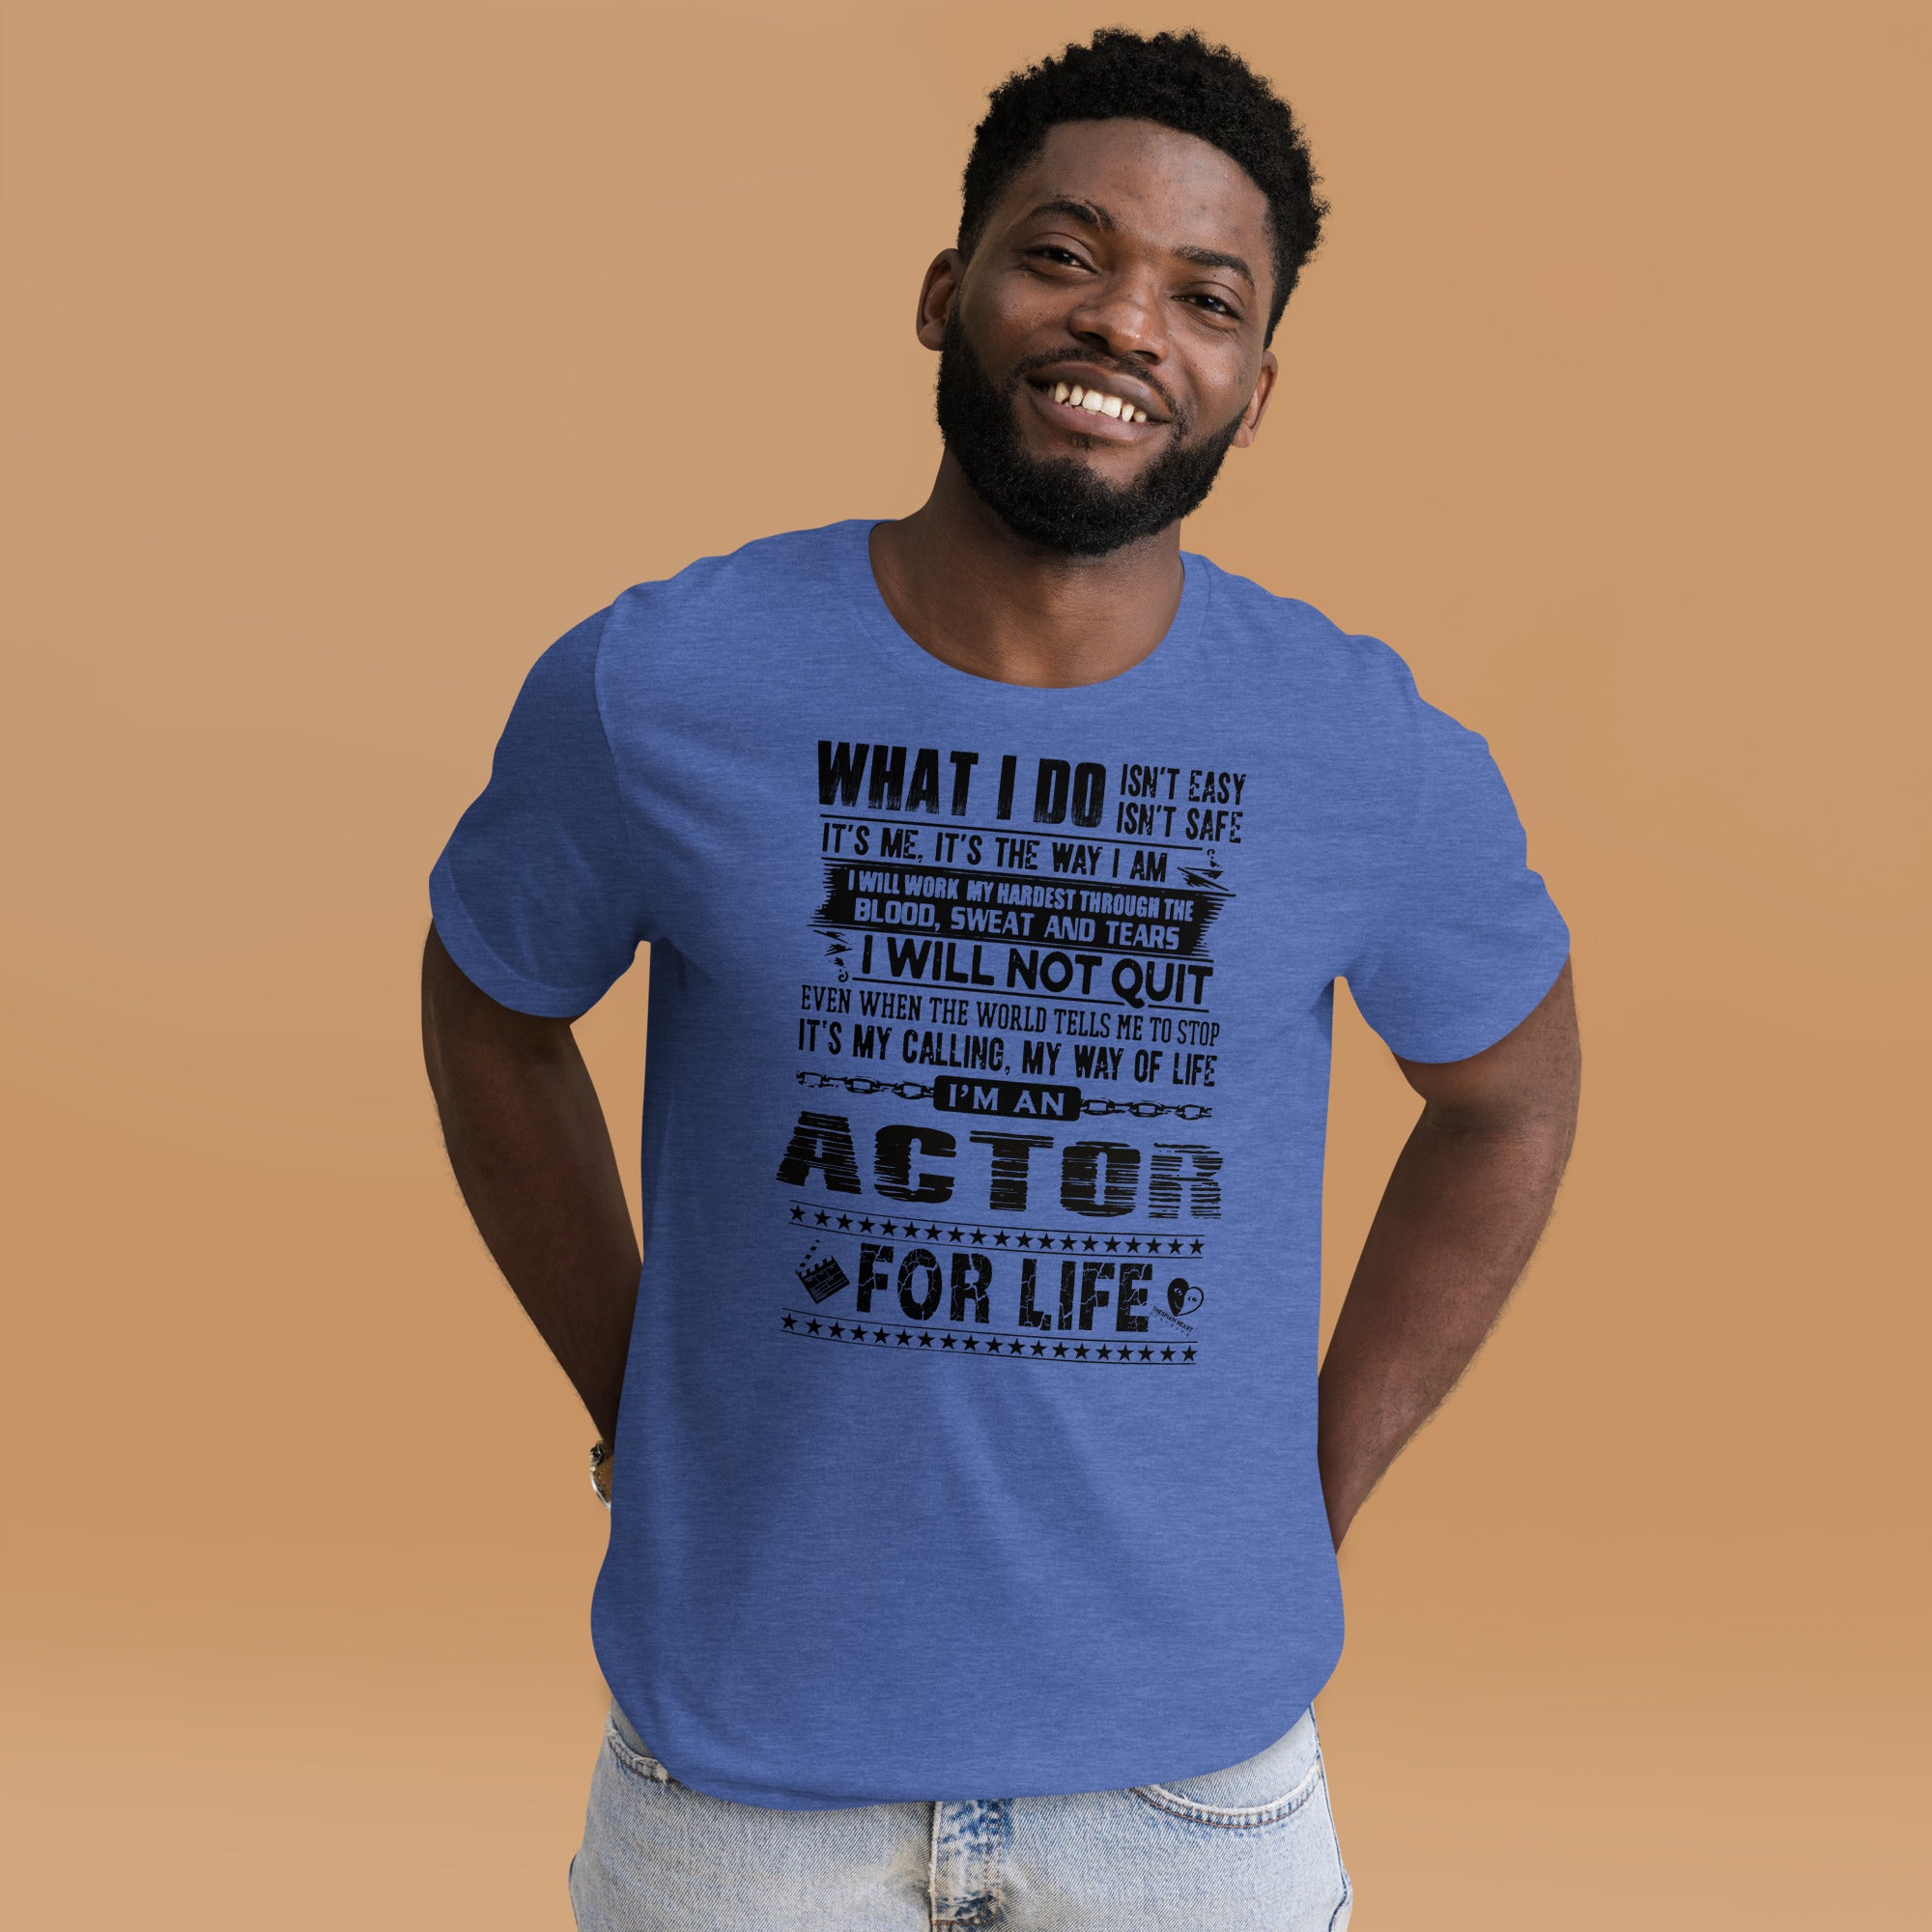 Actor For Life - Short -Sleeve Staple Unisex T-Shirt